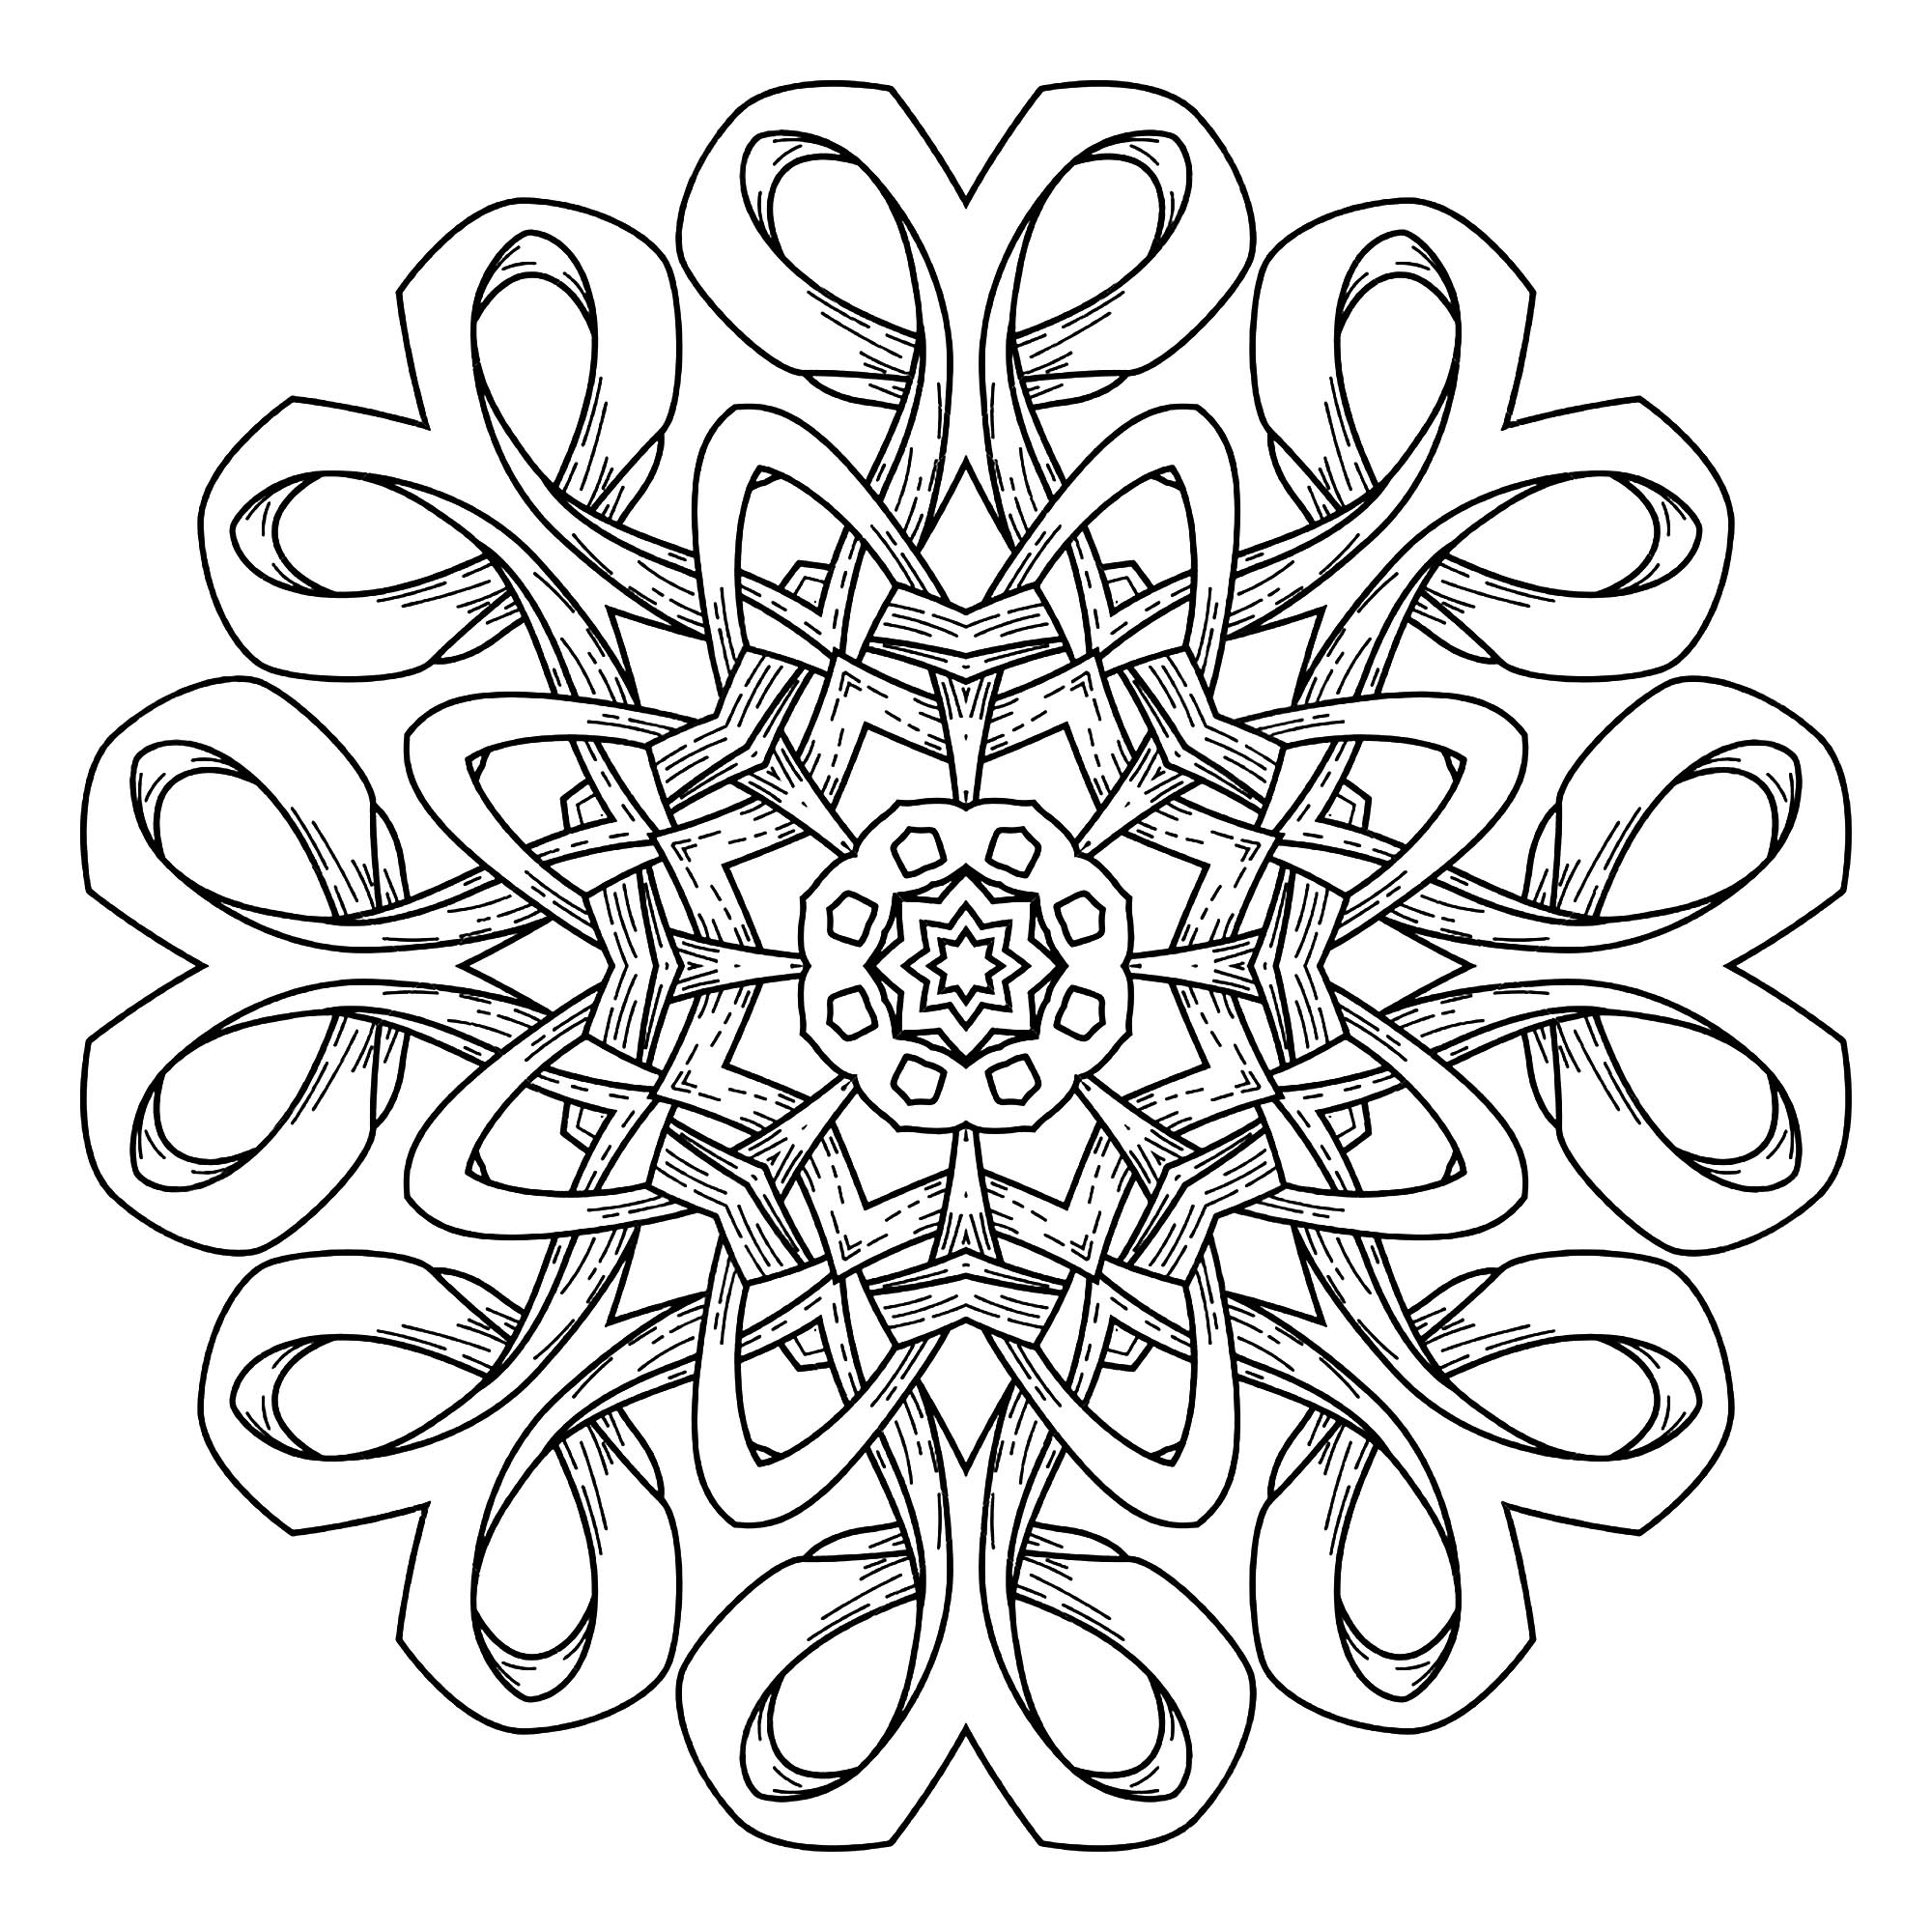 Un Mandala 'rubans' qui sort de l'ordinaire, qui vous permettra de passer un bon moment de coloriage, sans trop vous compliquer la vie à colorier de toute petites zones.